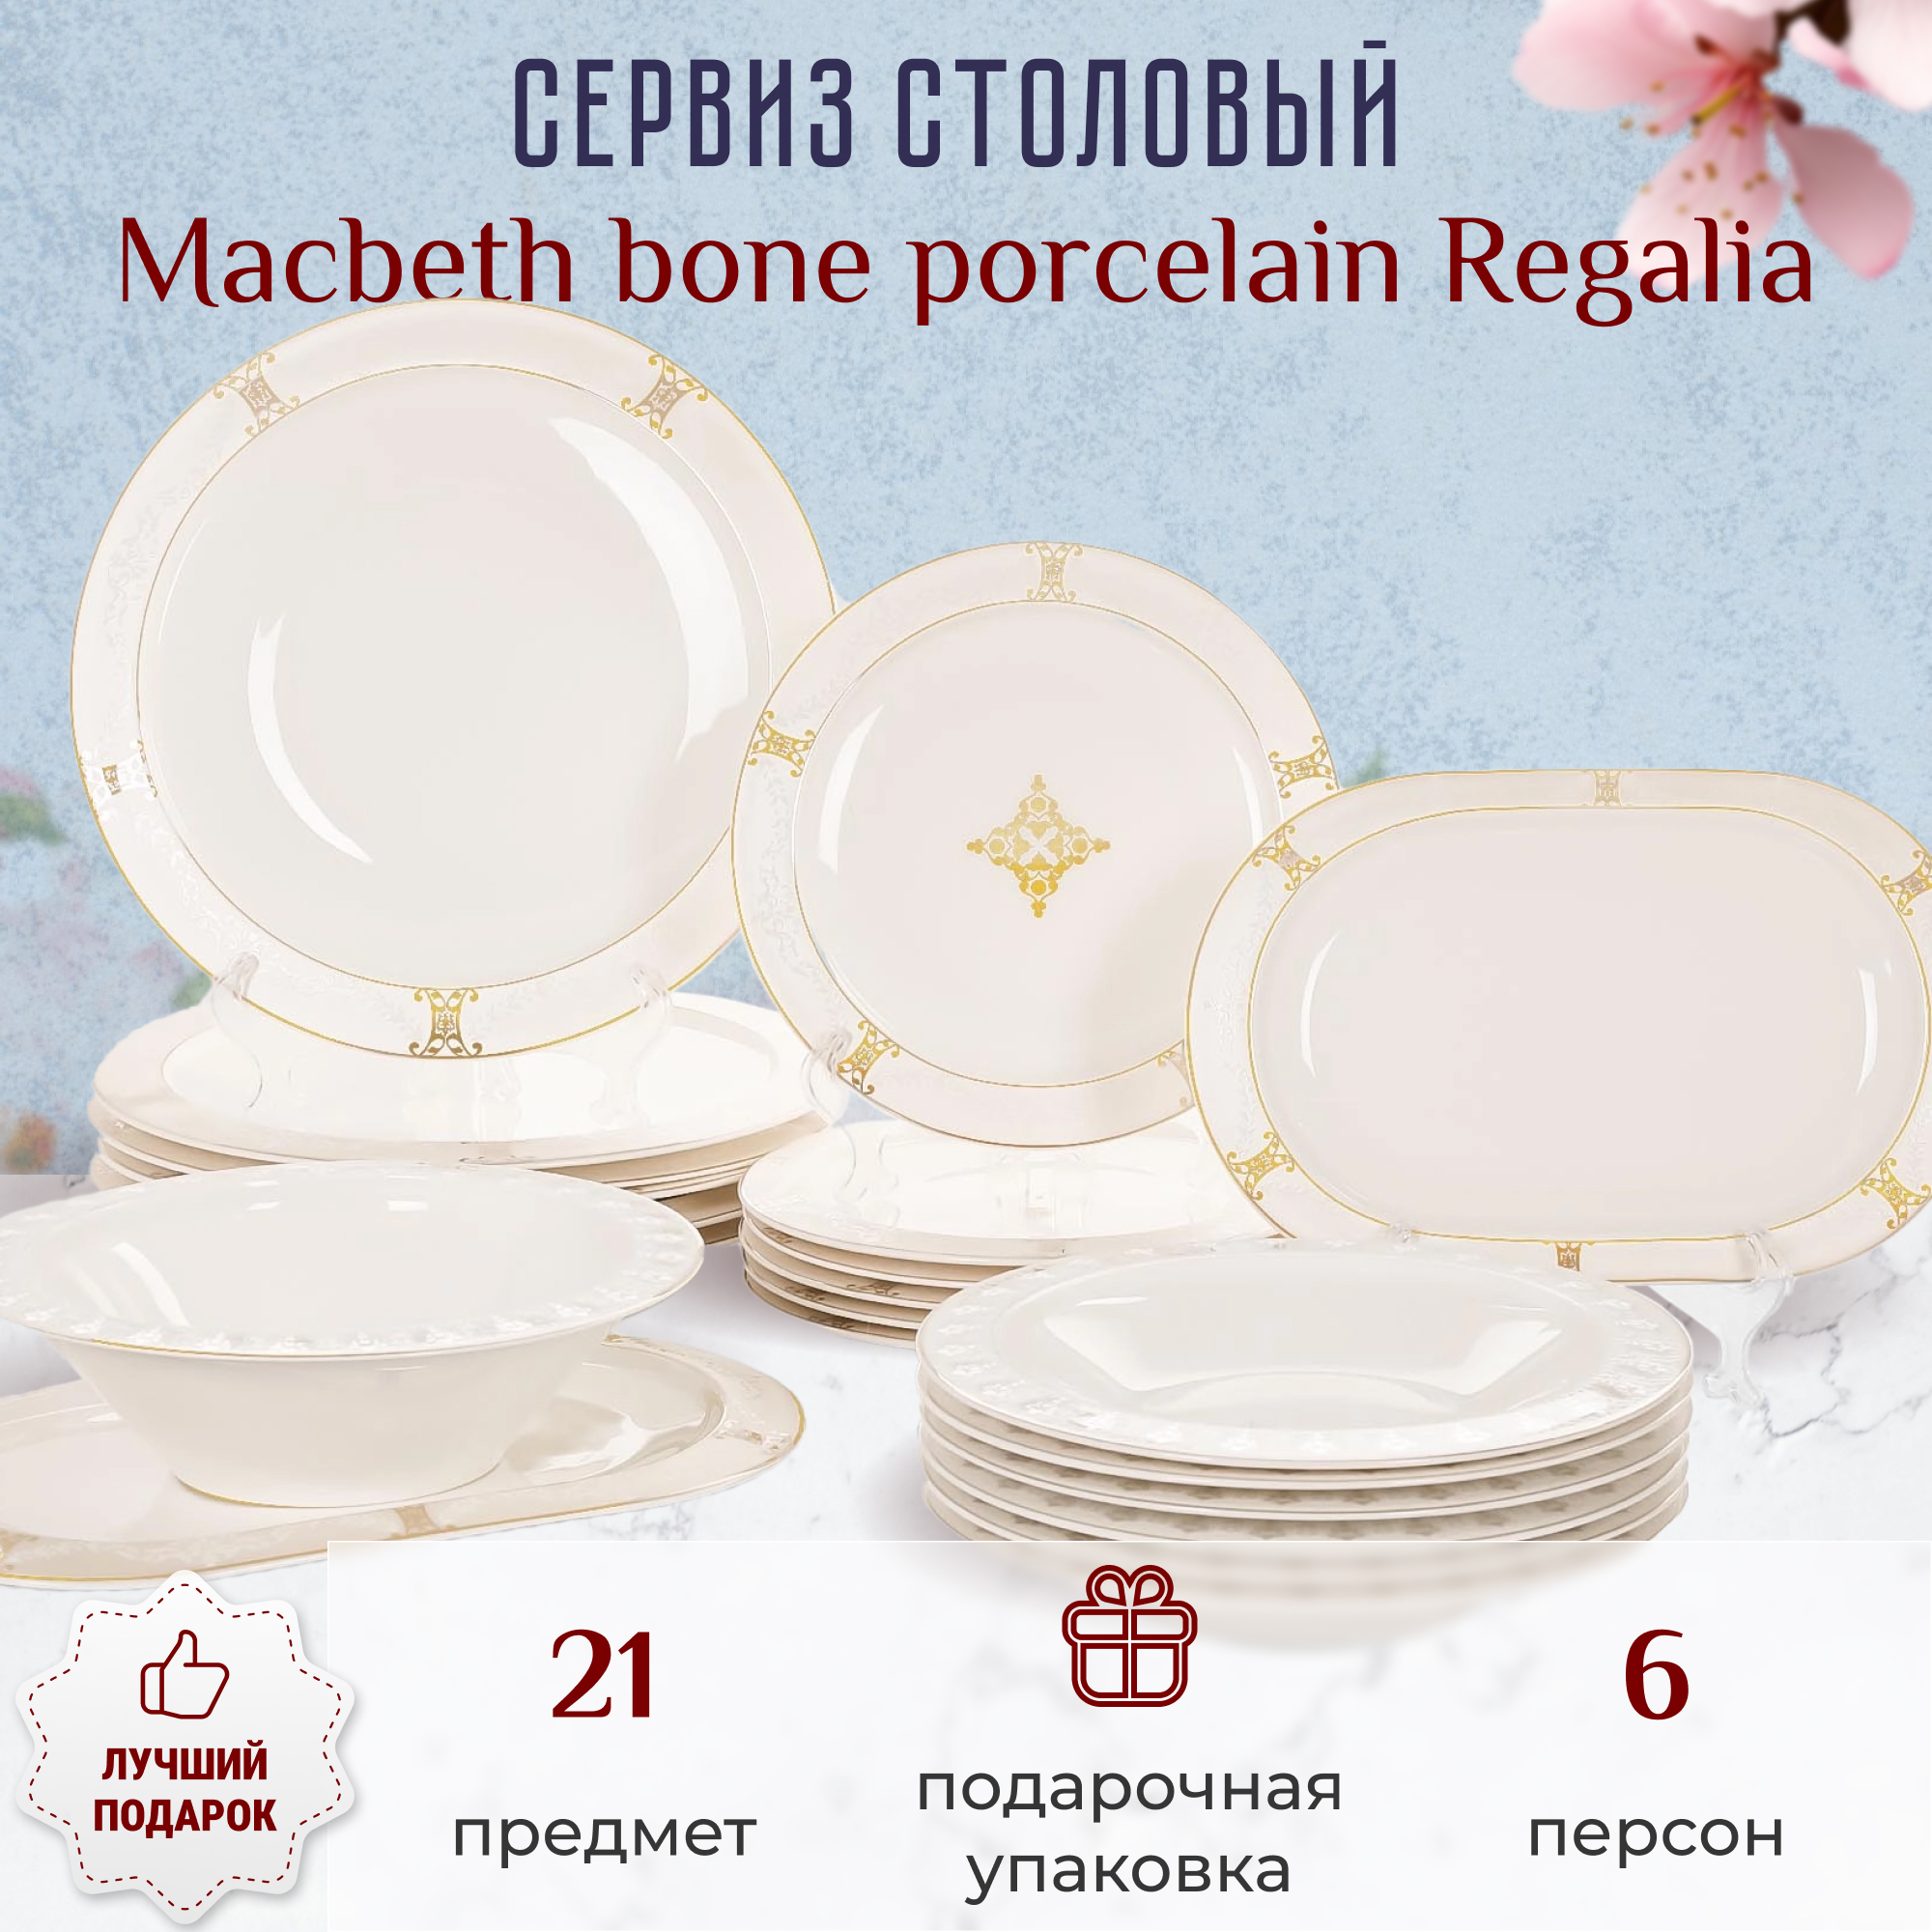 Сервиз столовый Macbeth bone porcelain Regalia 21 предмет 6 персон - фото 2